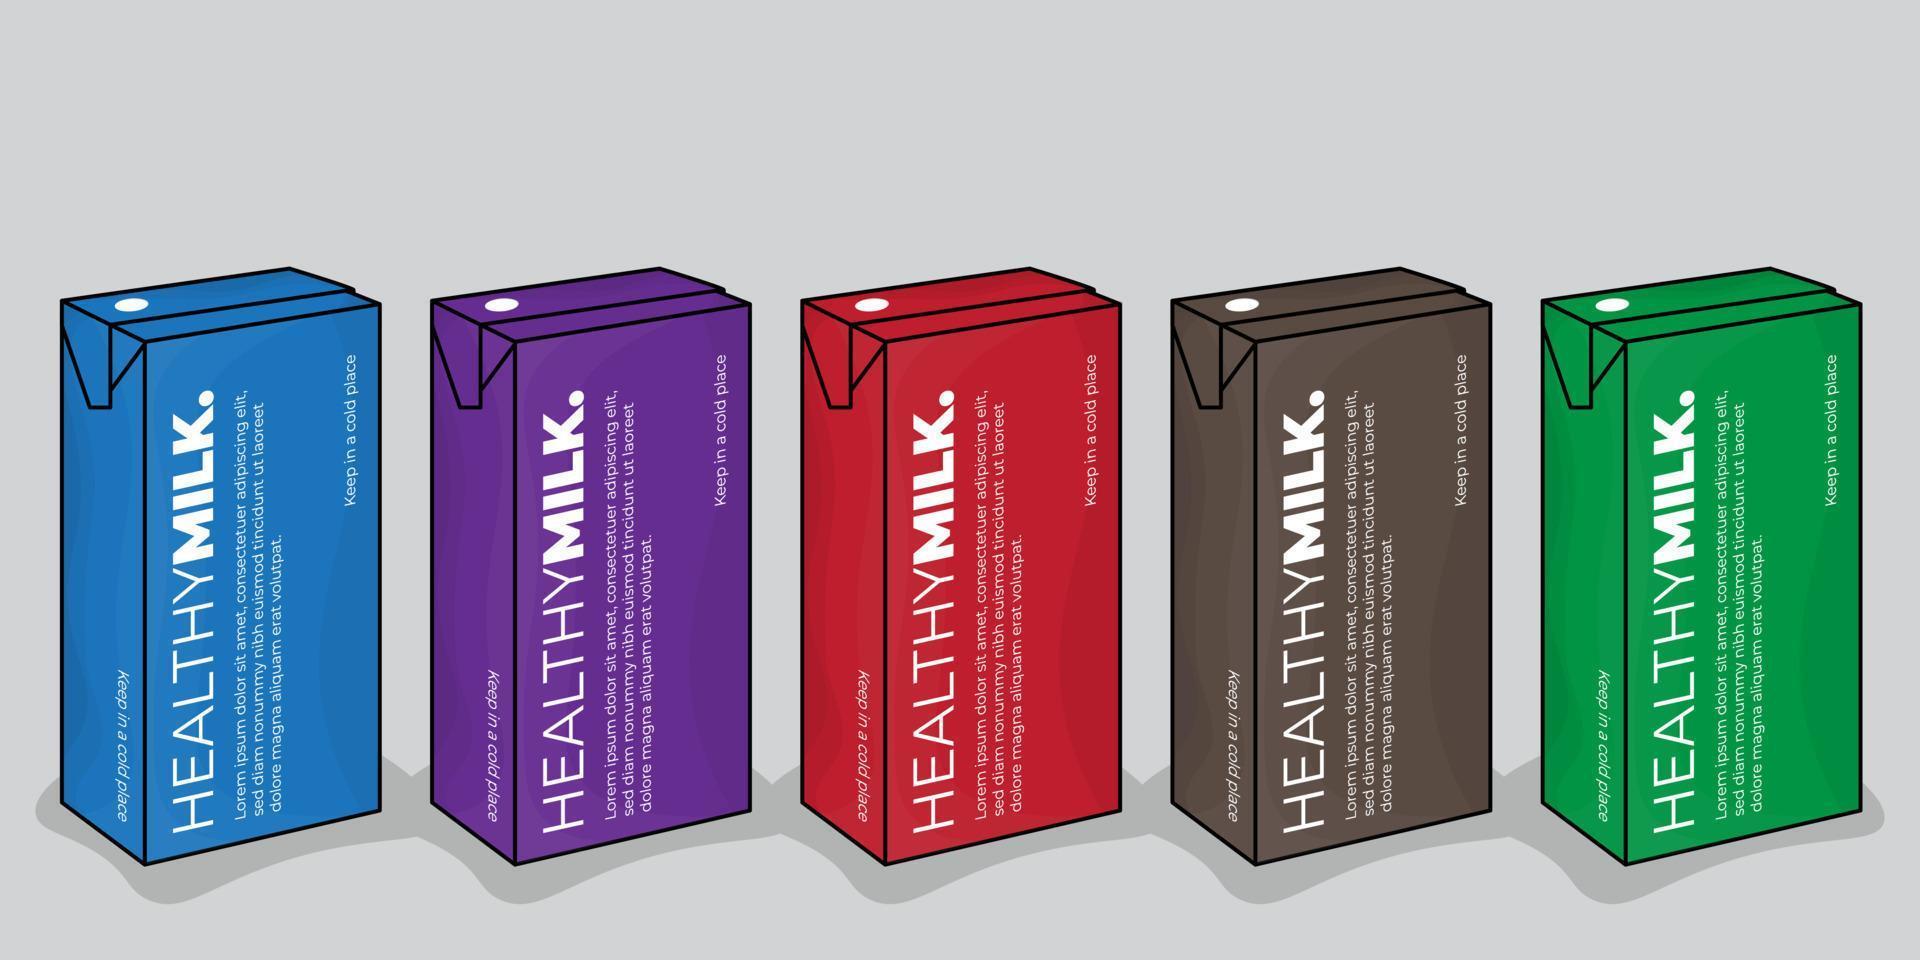 modelo de embalagem em design de caixa para suco ou leite com design de escolha multicolorida vetor